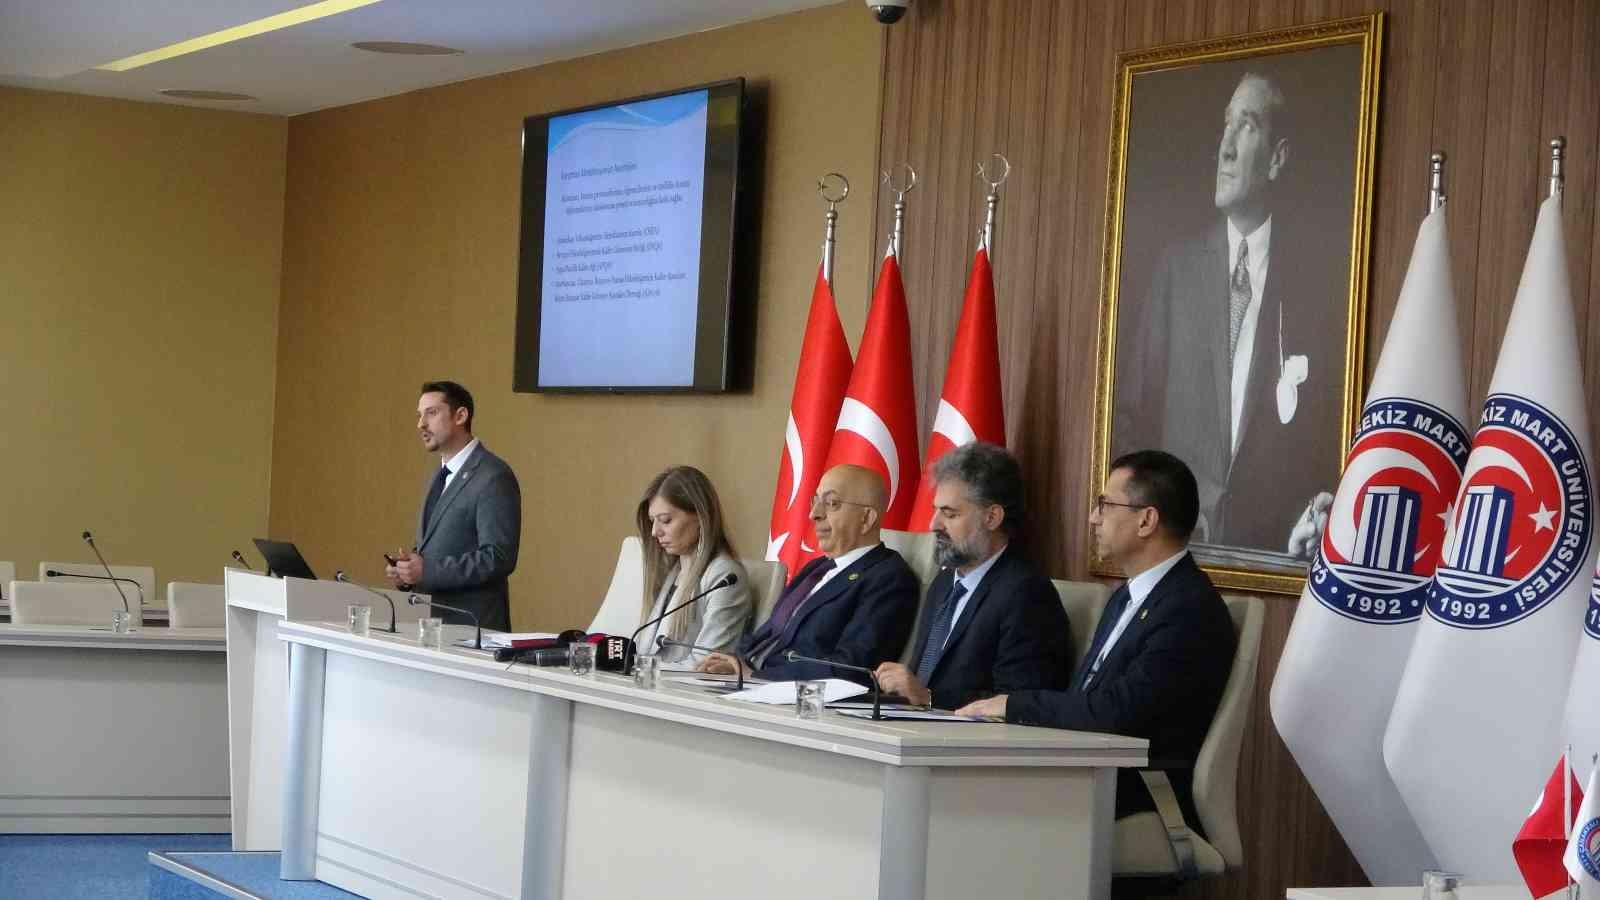 Çanakkale Onsekiz Mart Üniversitesi (ÇOMÜ) 30’uncu yılında Türkiye’deki 210 üniversite arasında uluslararası tanınırlığa sahip biçimde kurumsal ...